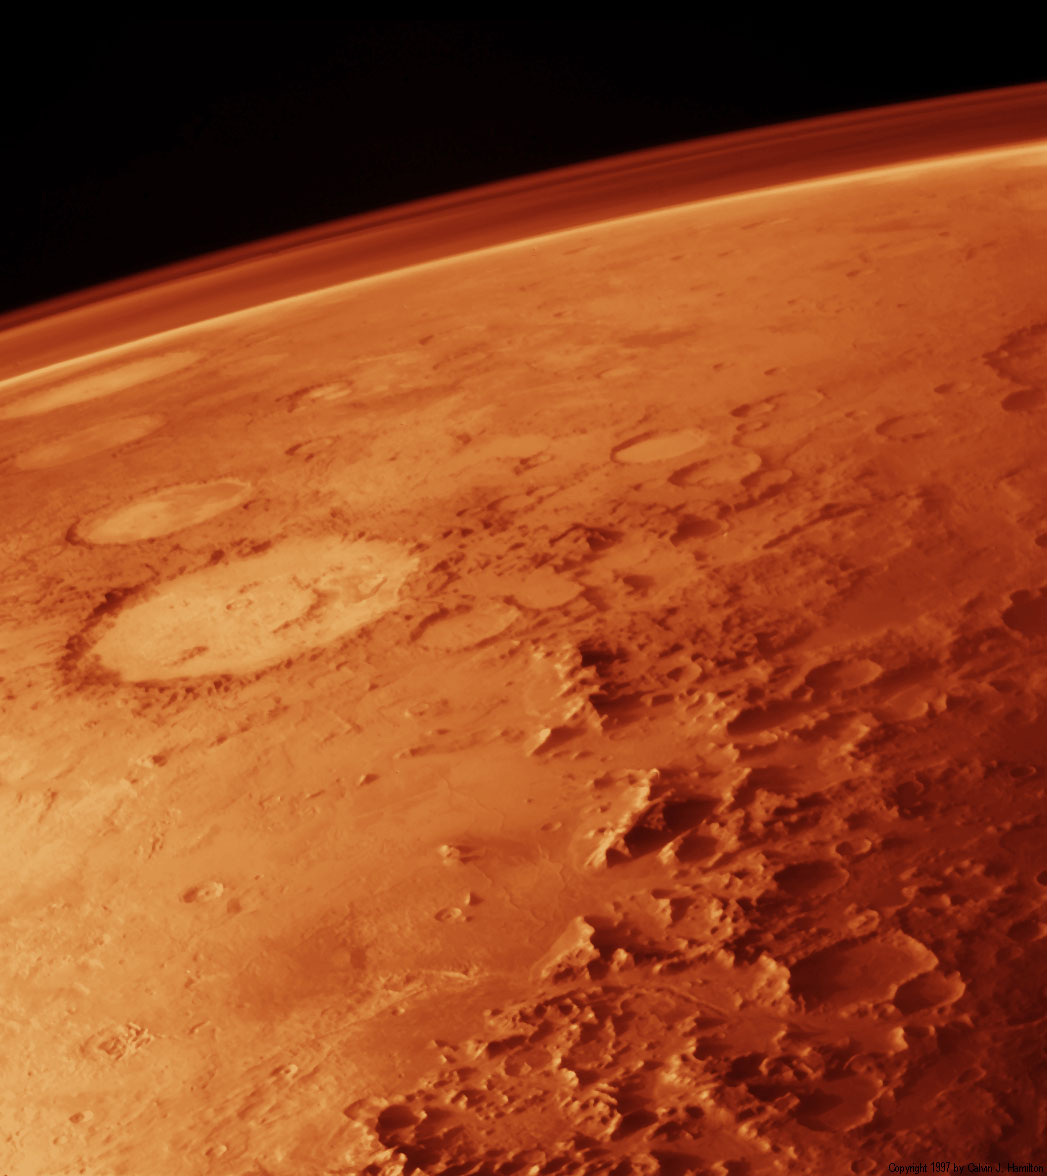 pourquoi la planete mars est elle rouge